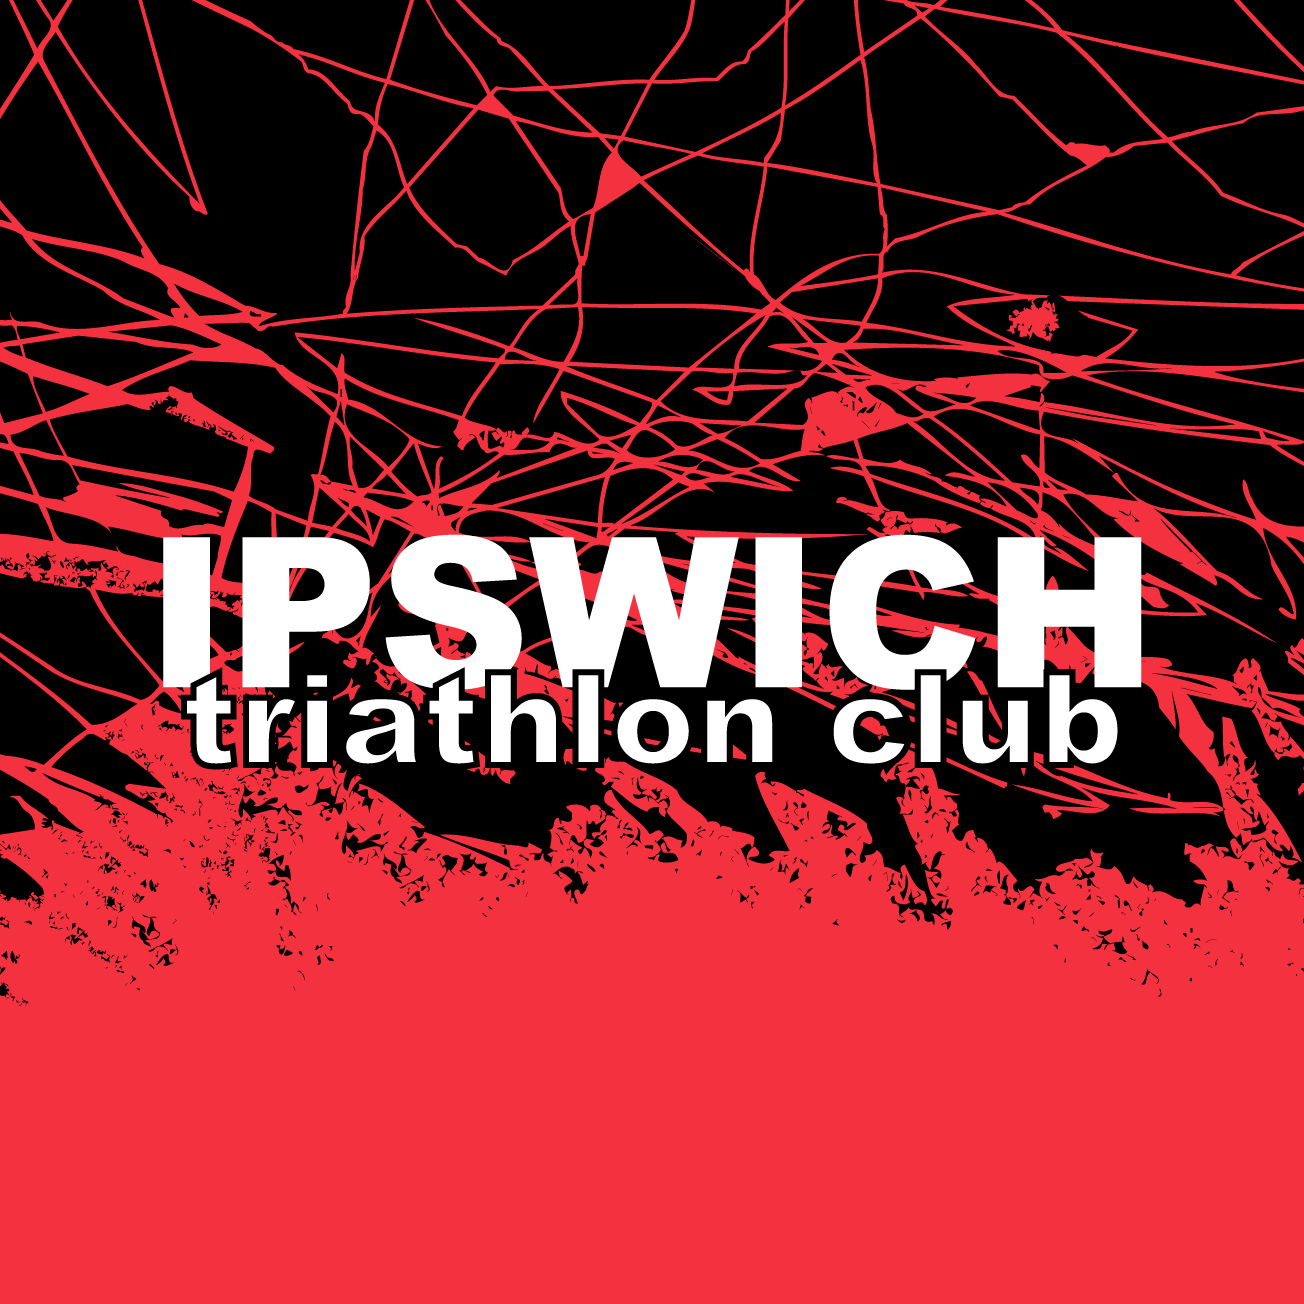 Club Image for IPSWICH TRIATHLON CLUB